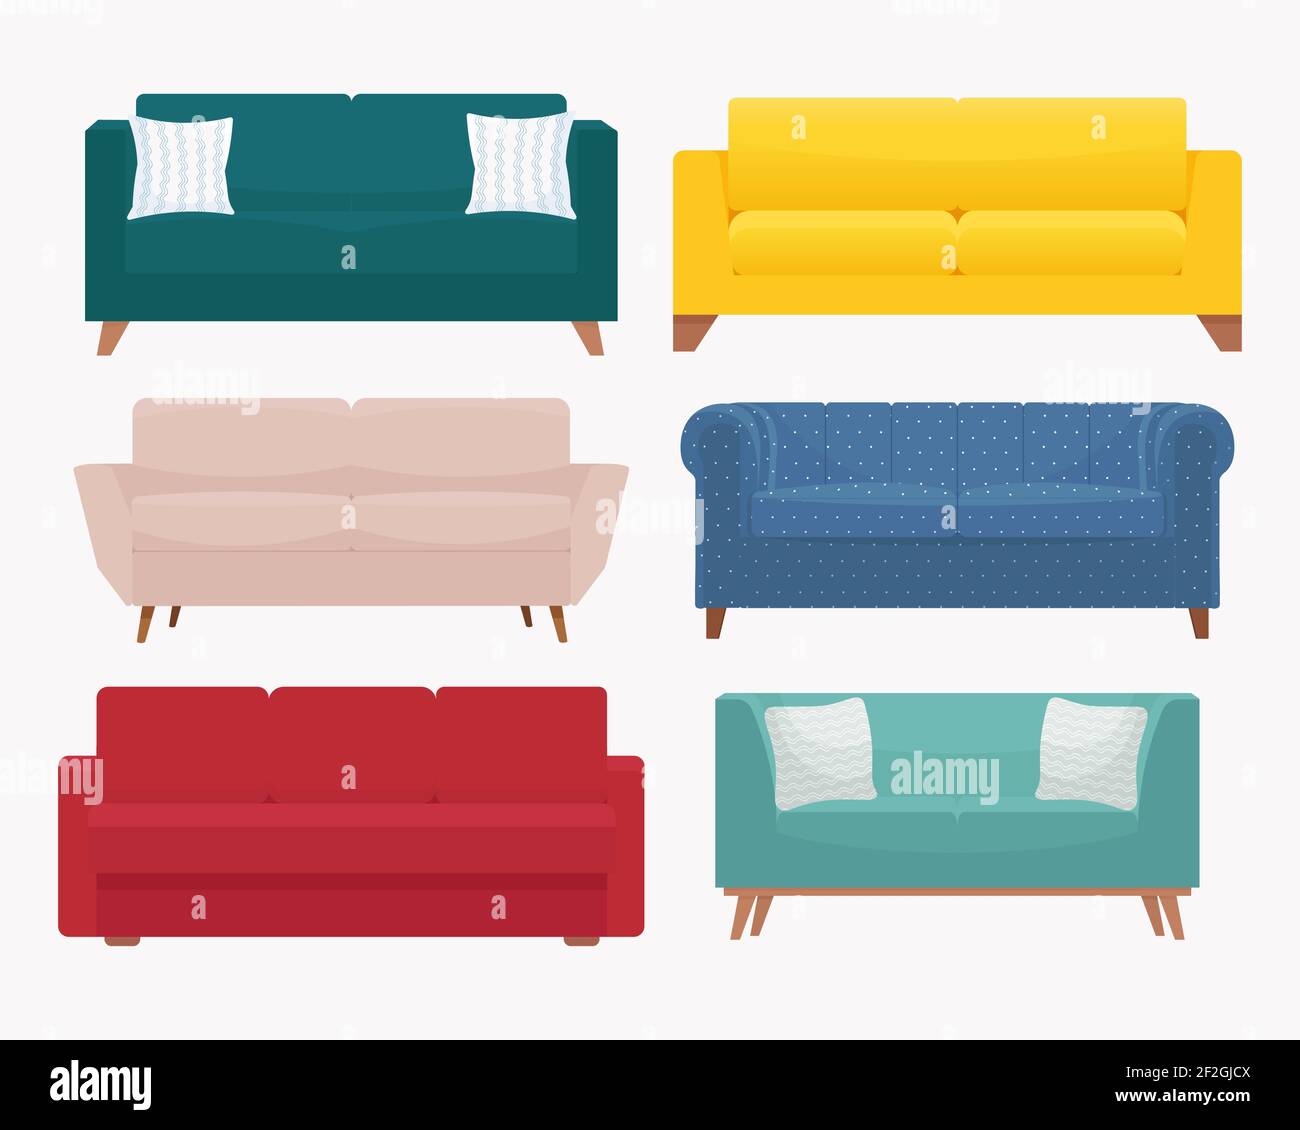 Sofagarnitur. Kollektion von stilvollen modernen gemütlichen Couch. Vektorgrafik in flacher Form, isoliert auf weißem Hintergrund Stock Vektor